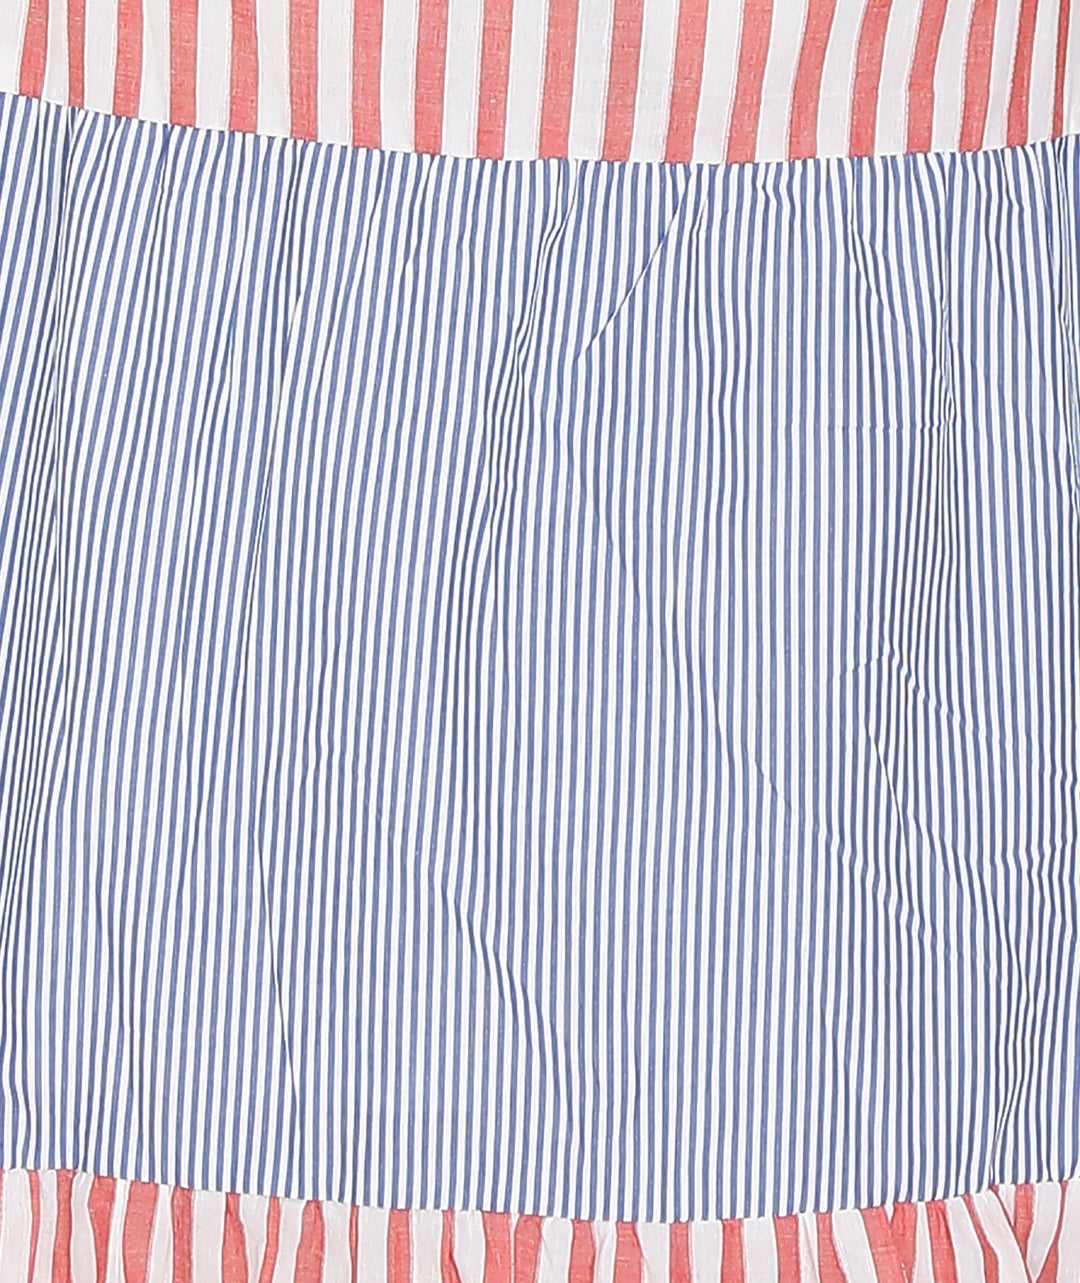 Contrast Stripes Cotton Maxi Dress